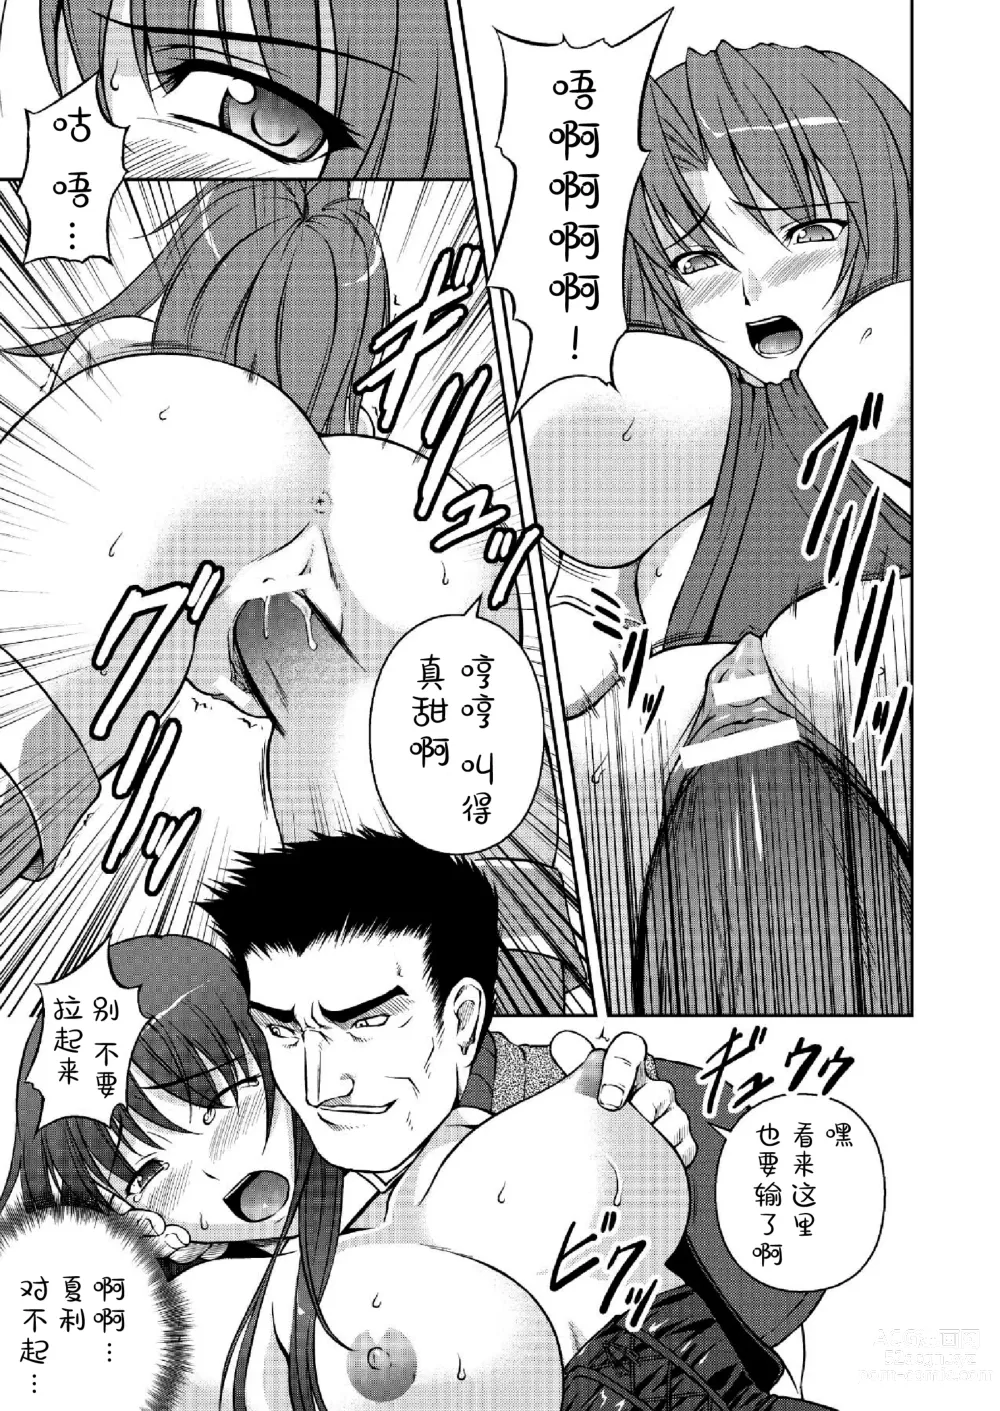 Page 139 of manga Ryoujoku no Rensa